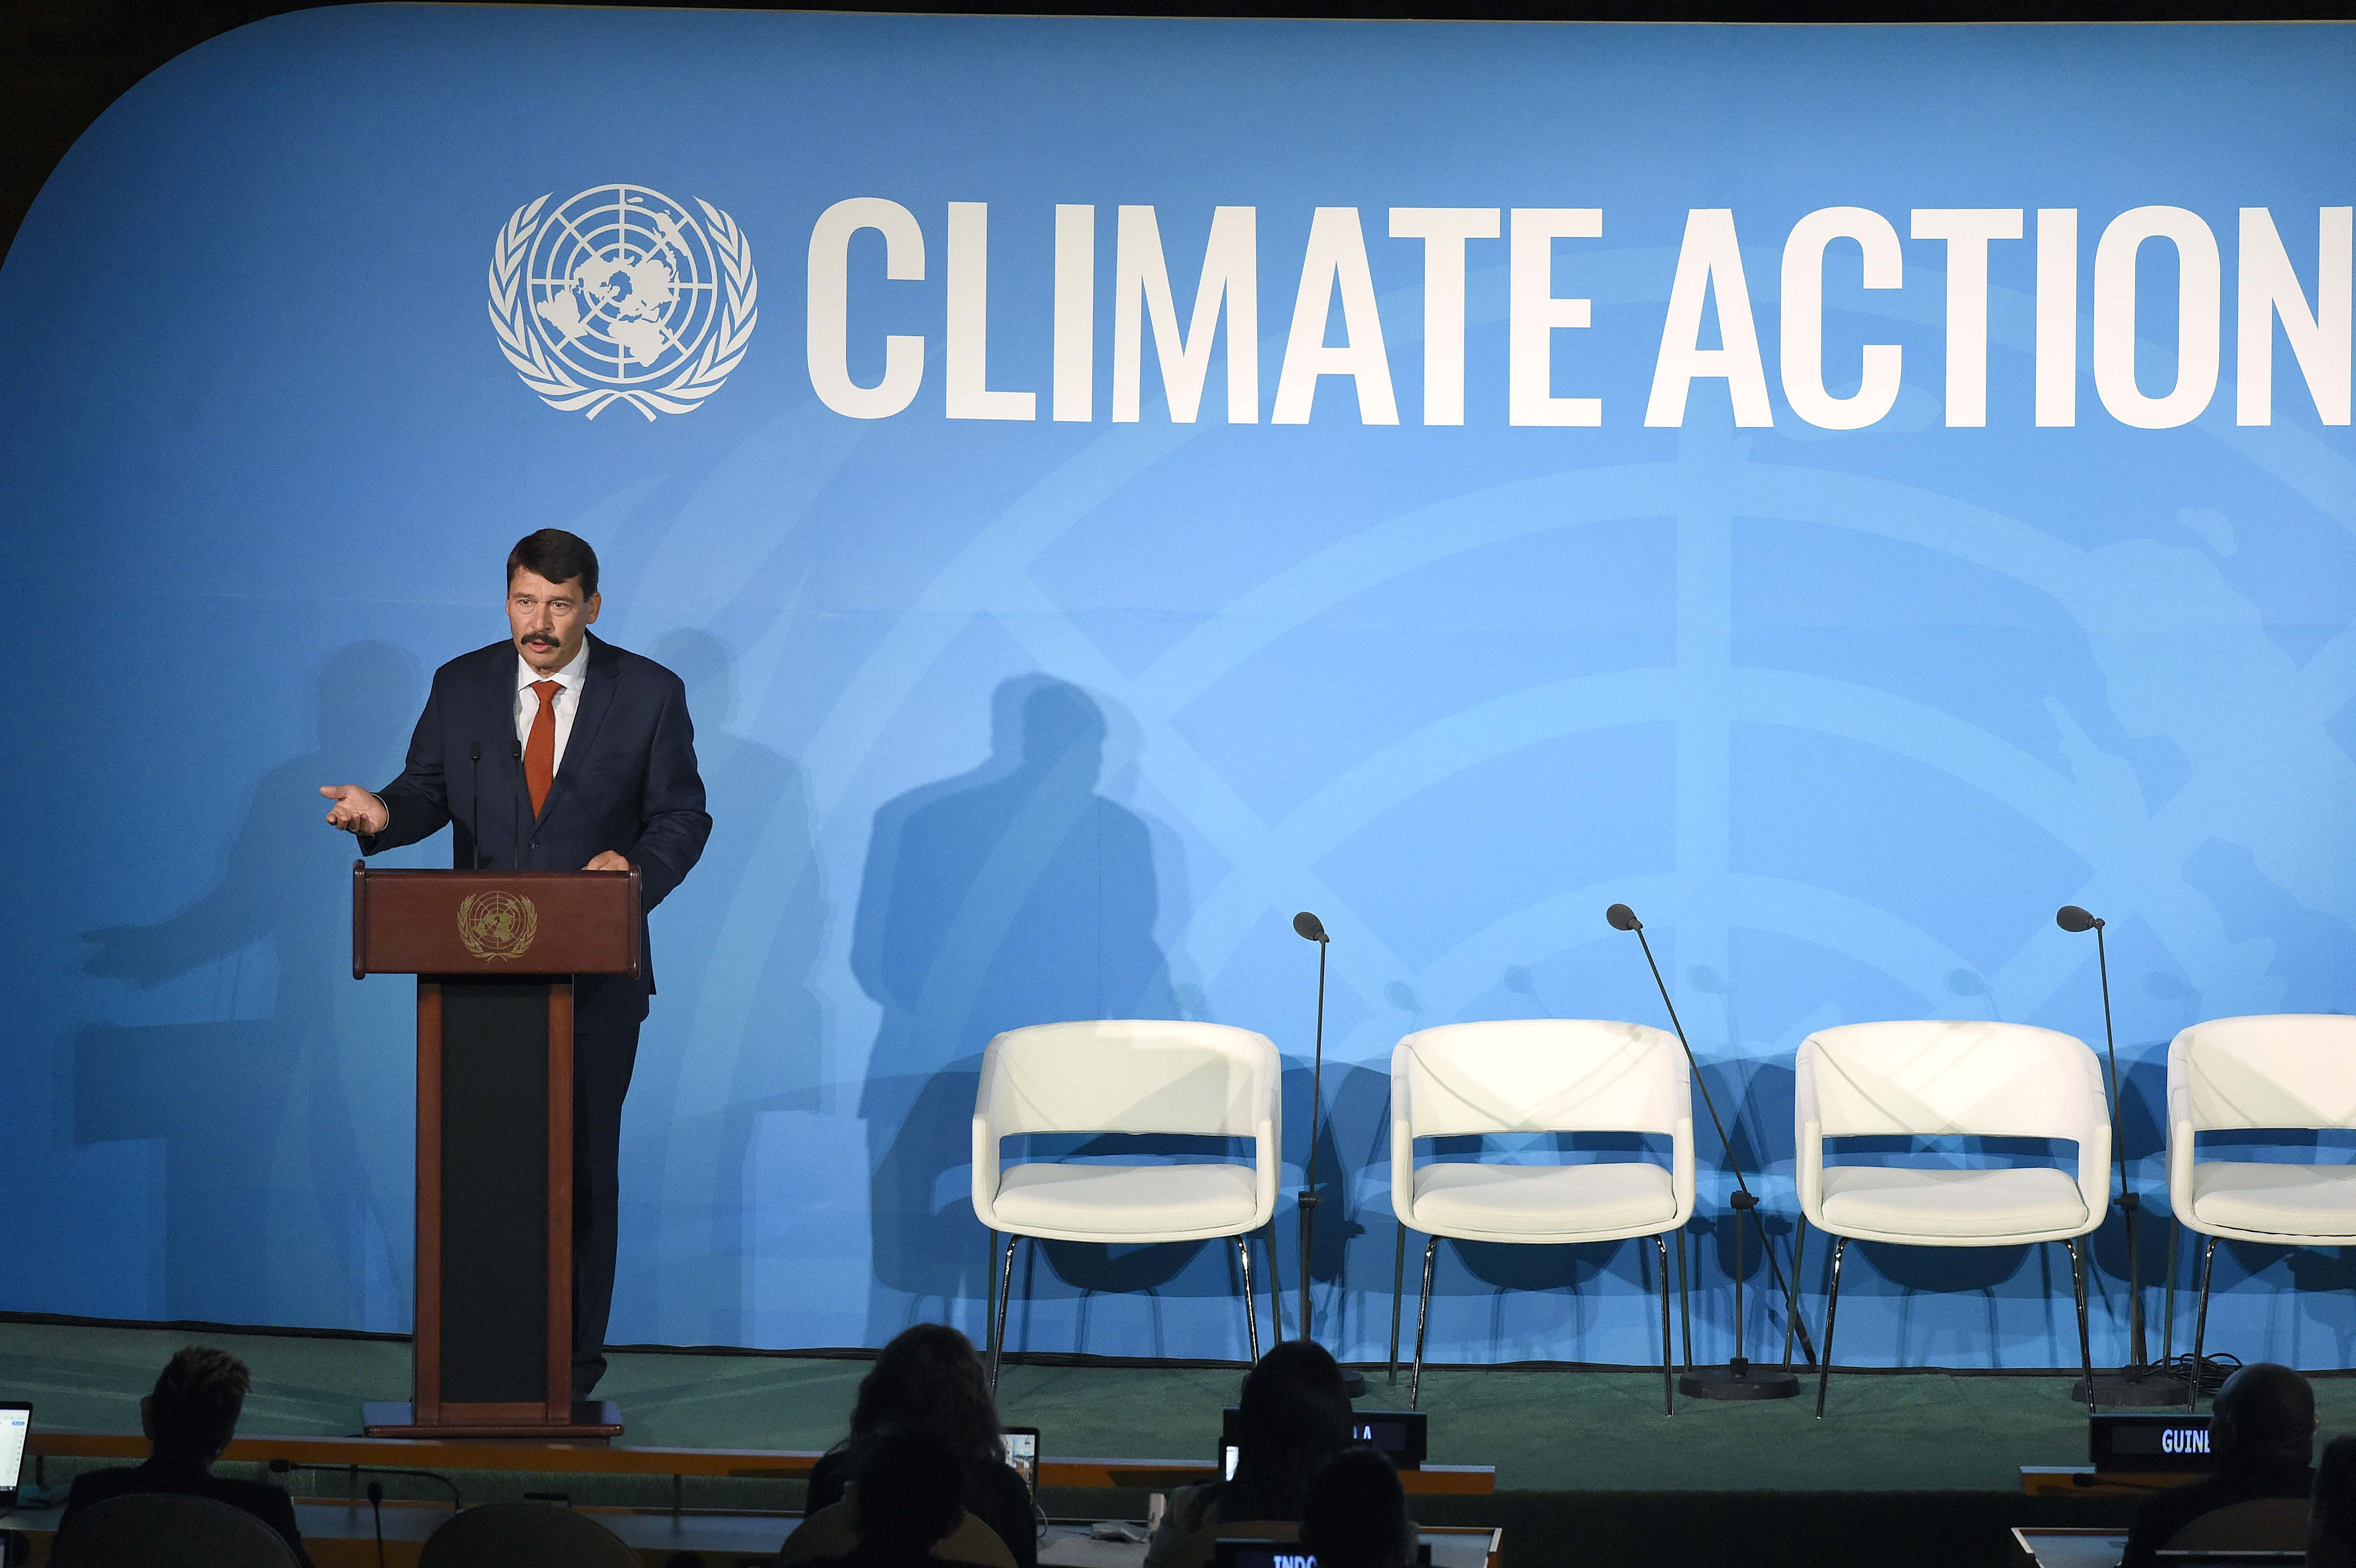 Ha átvertek, nem bocsátunk meg – Szenvedélyes üzenet és magyar ígéretek az ENSZ-klímacsúcson